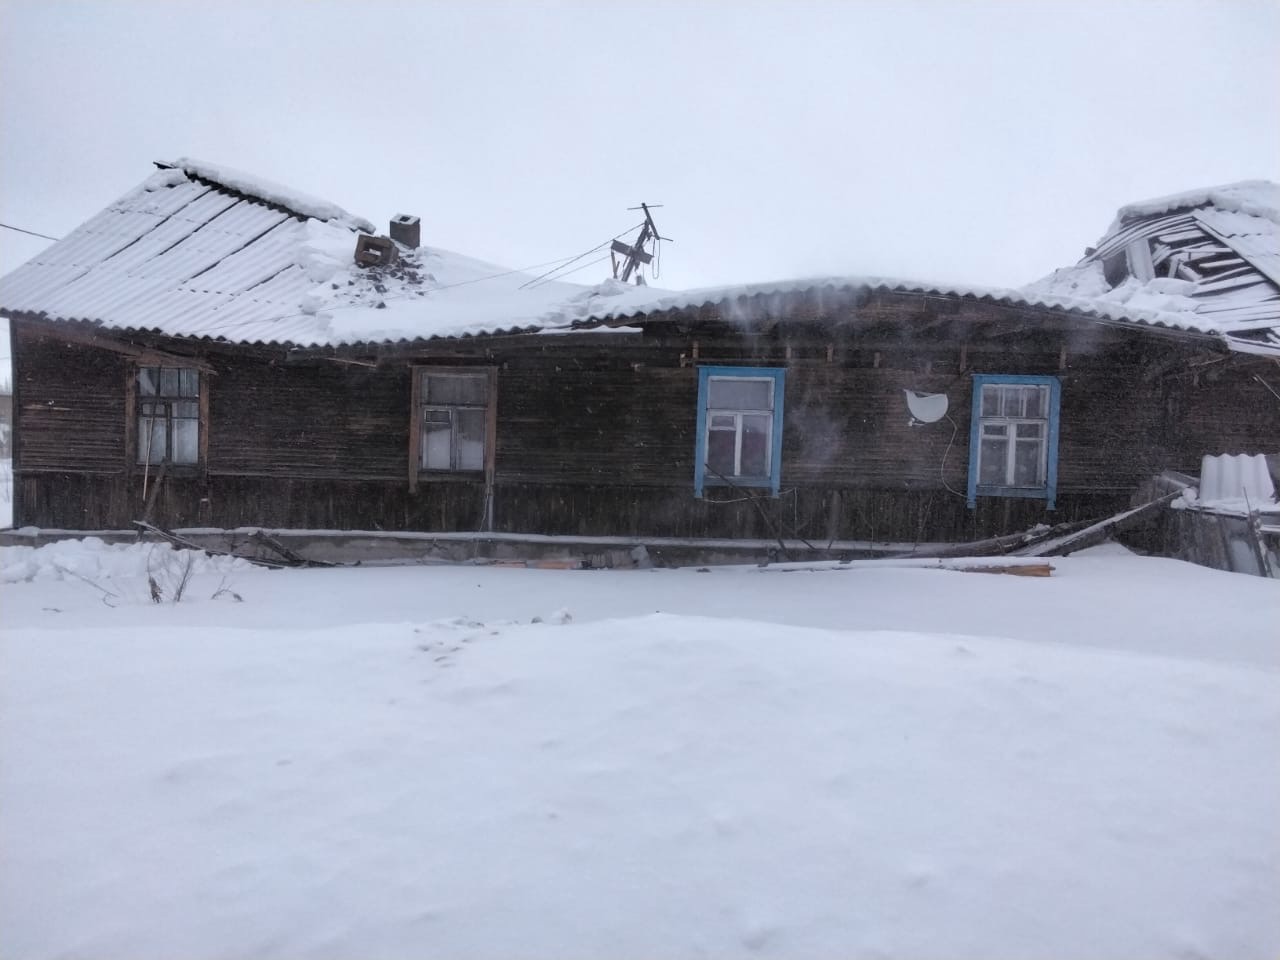 ЧП: Под тяжестью снега крыша дома обрушилась на головы жильцов в райцентре Карелии